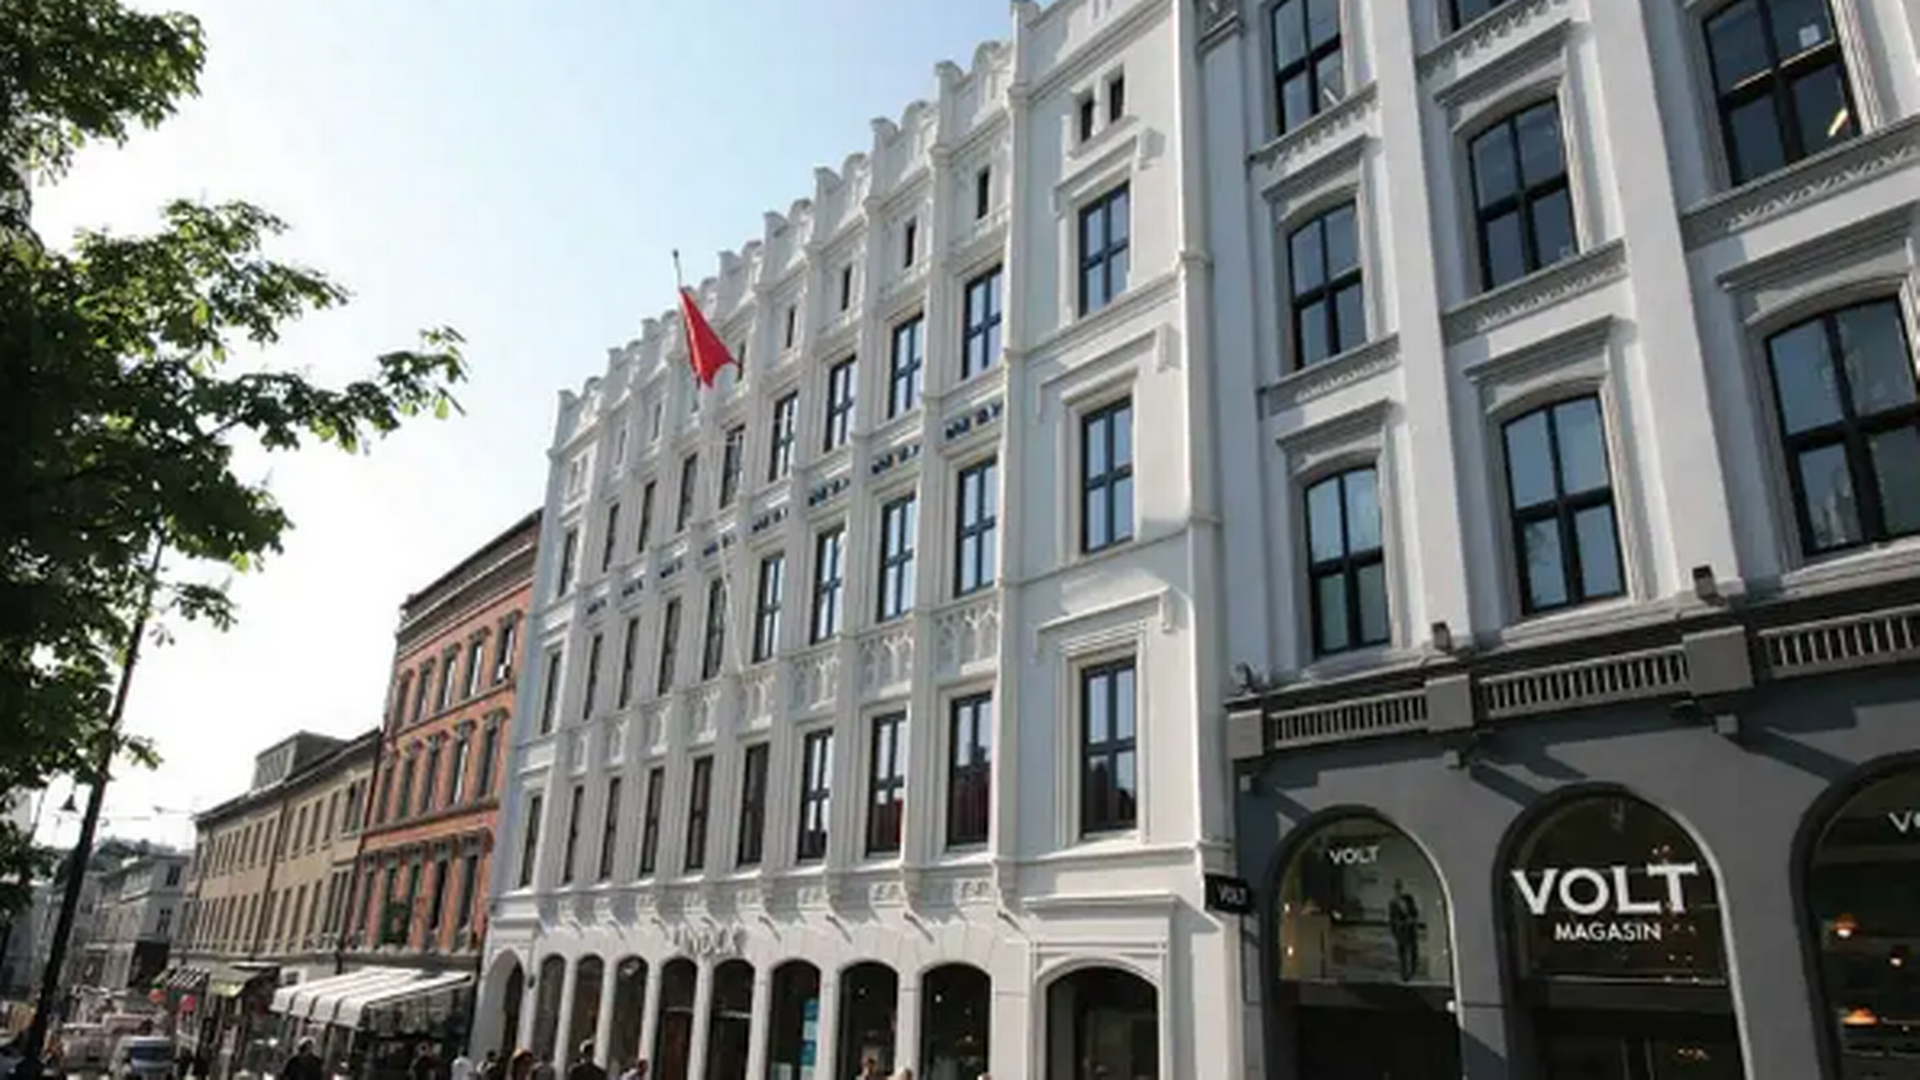 Nrep, der forvalter ejendomsfonde og har hjemsted i København, er ny ejer af central hotelejendom i Oslo. | Foto: Strawberry